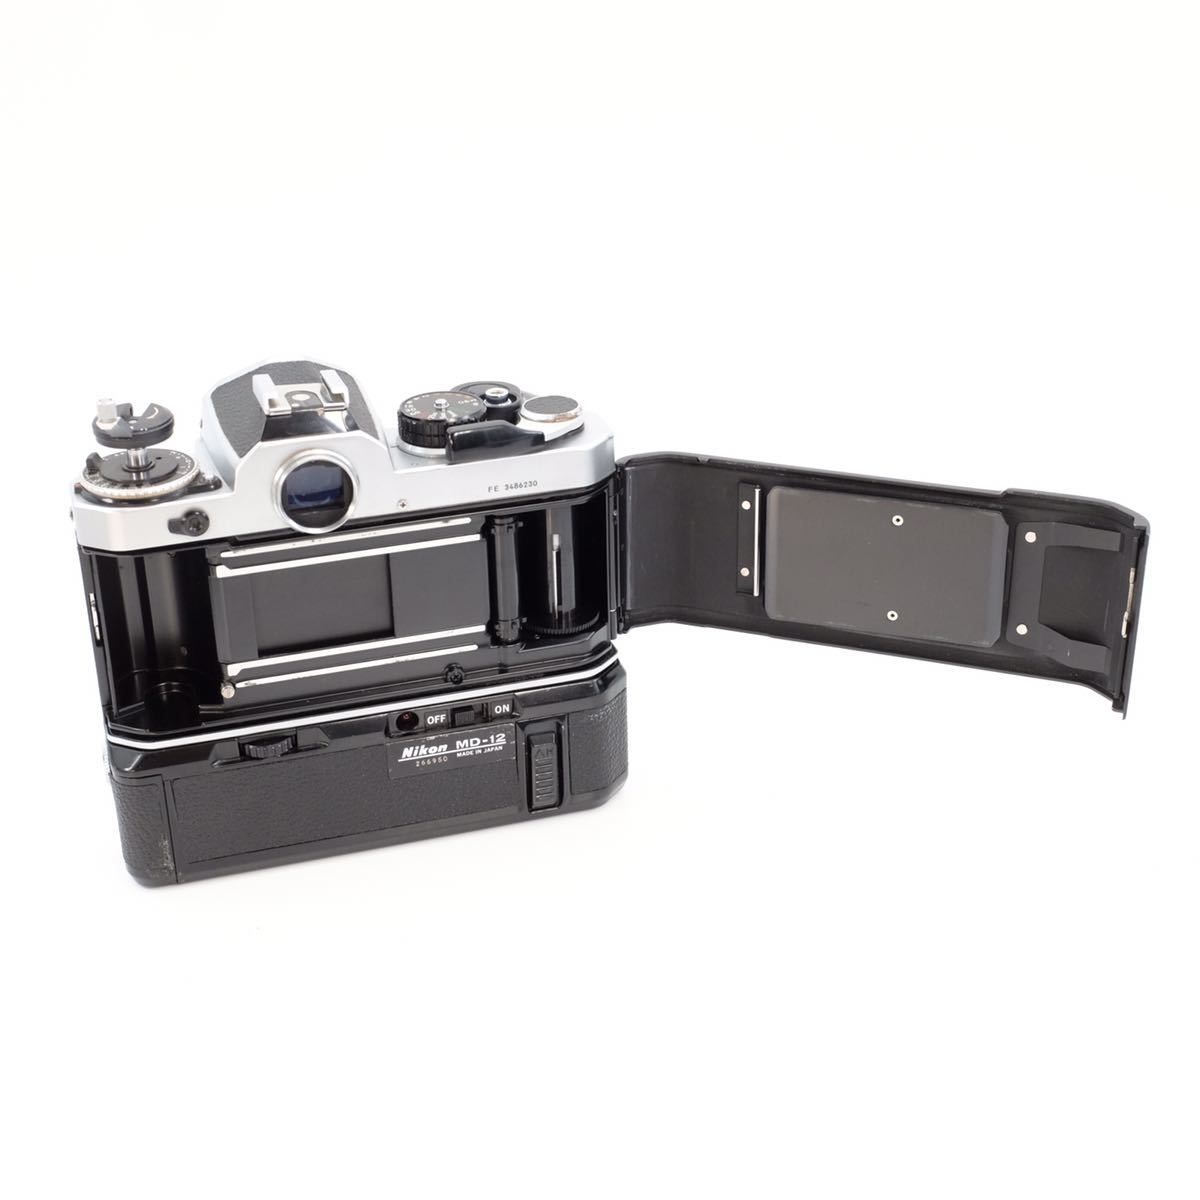 Nikon ニコン FE +MD-12モータードライブ 一眼レフフィルムカメラ